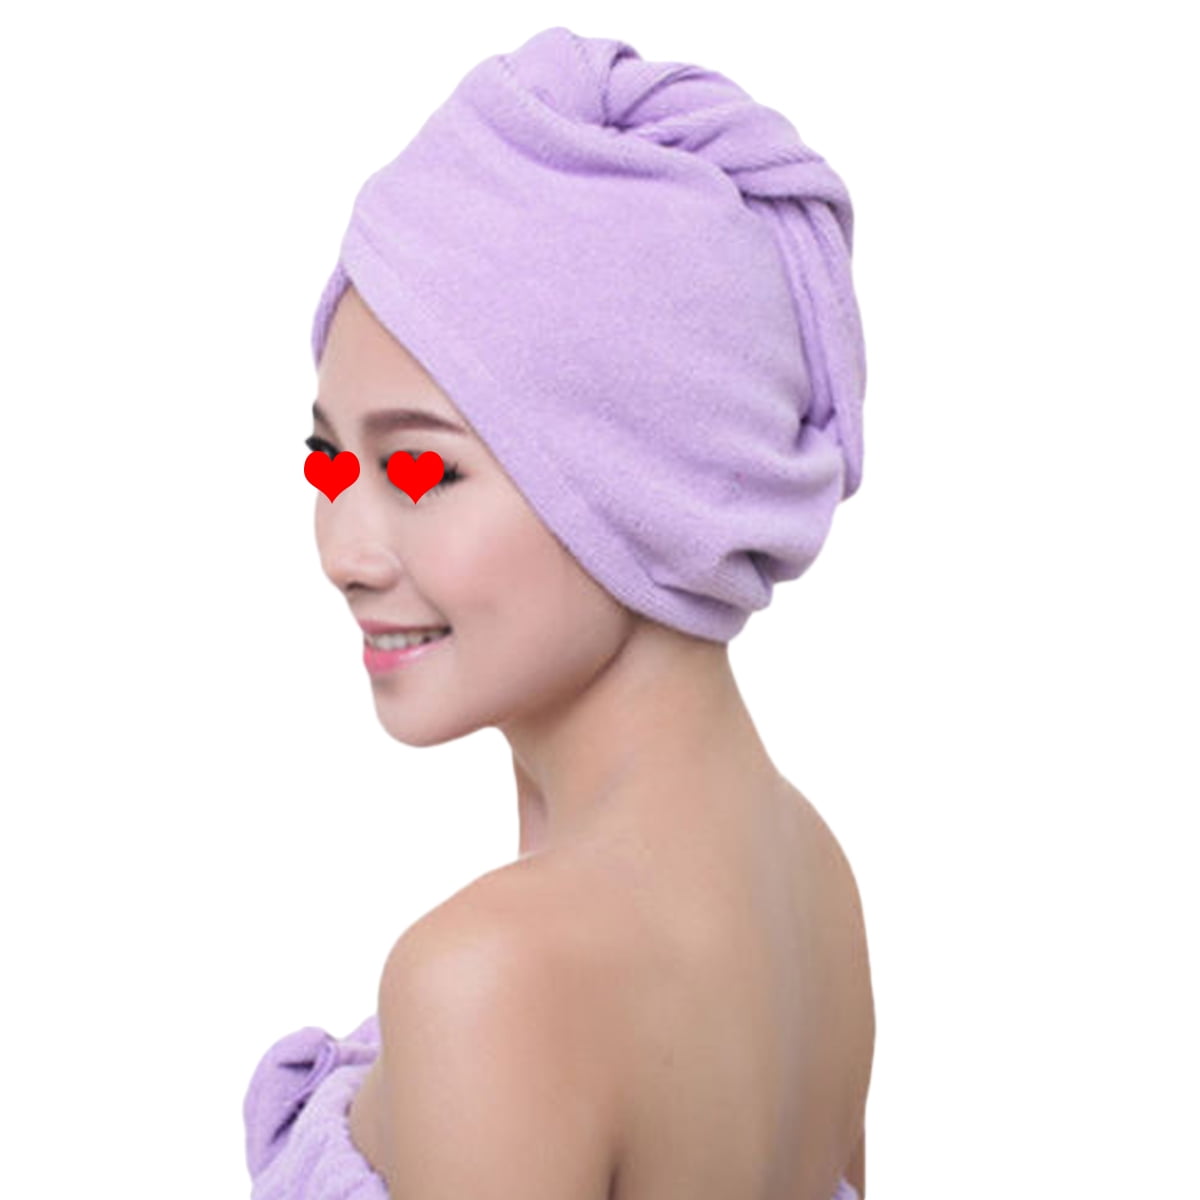 Quick Drying Magic Hair Turban Towel Microfibre Hair Wrap Bath Shower Cap Hat 